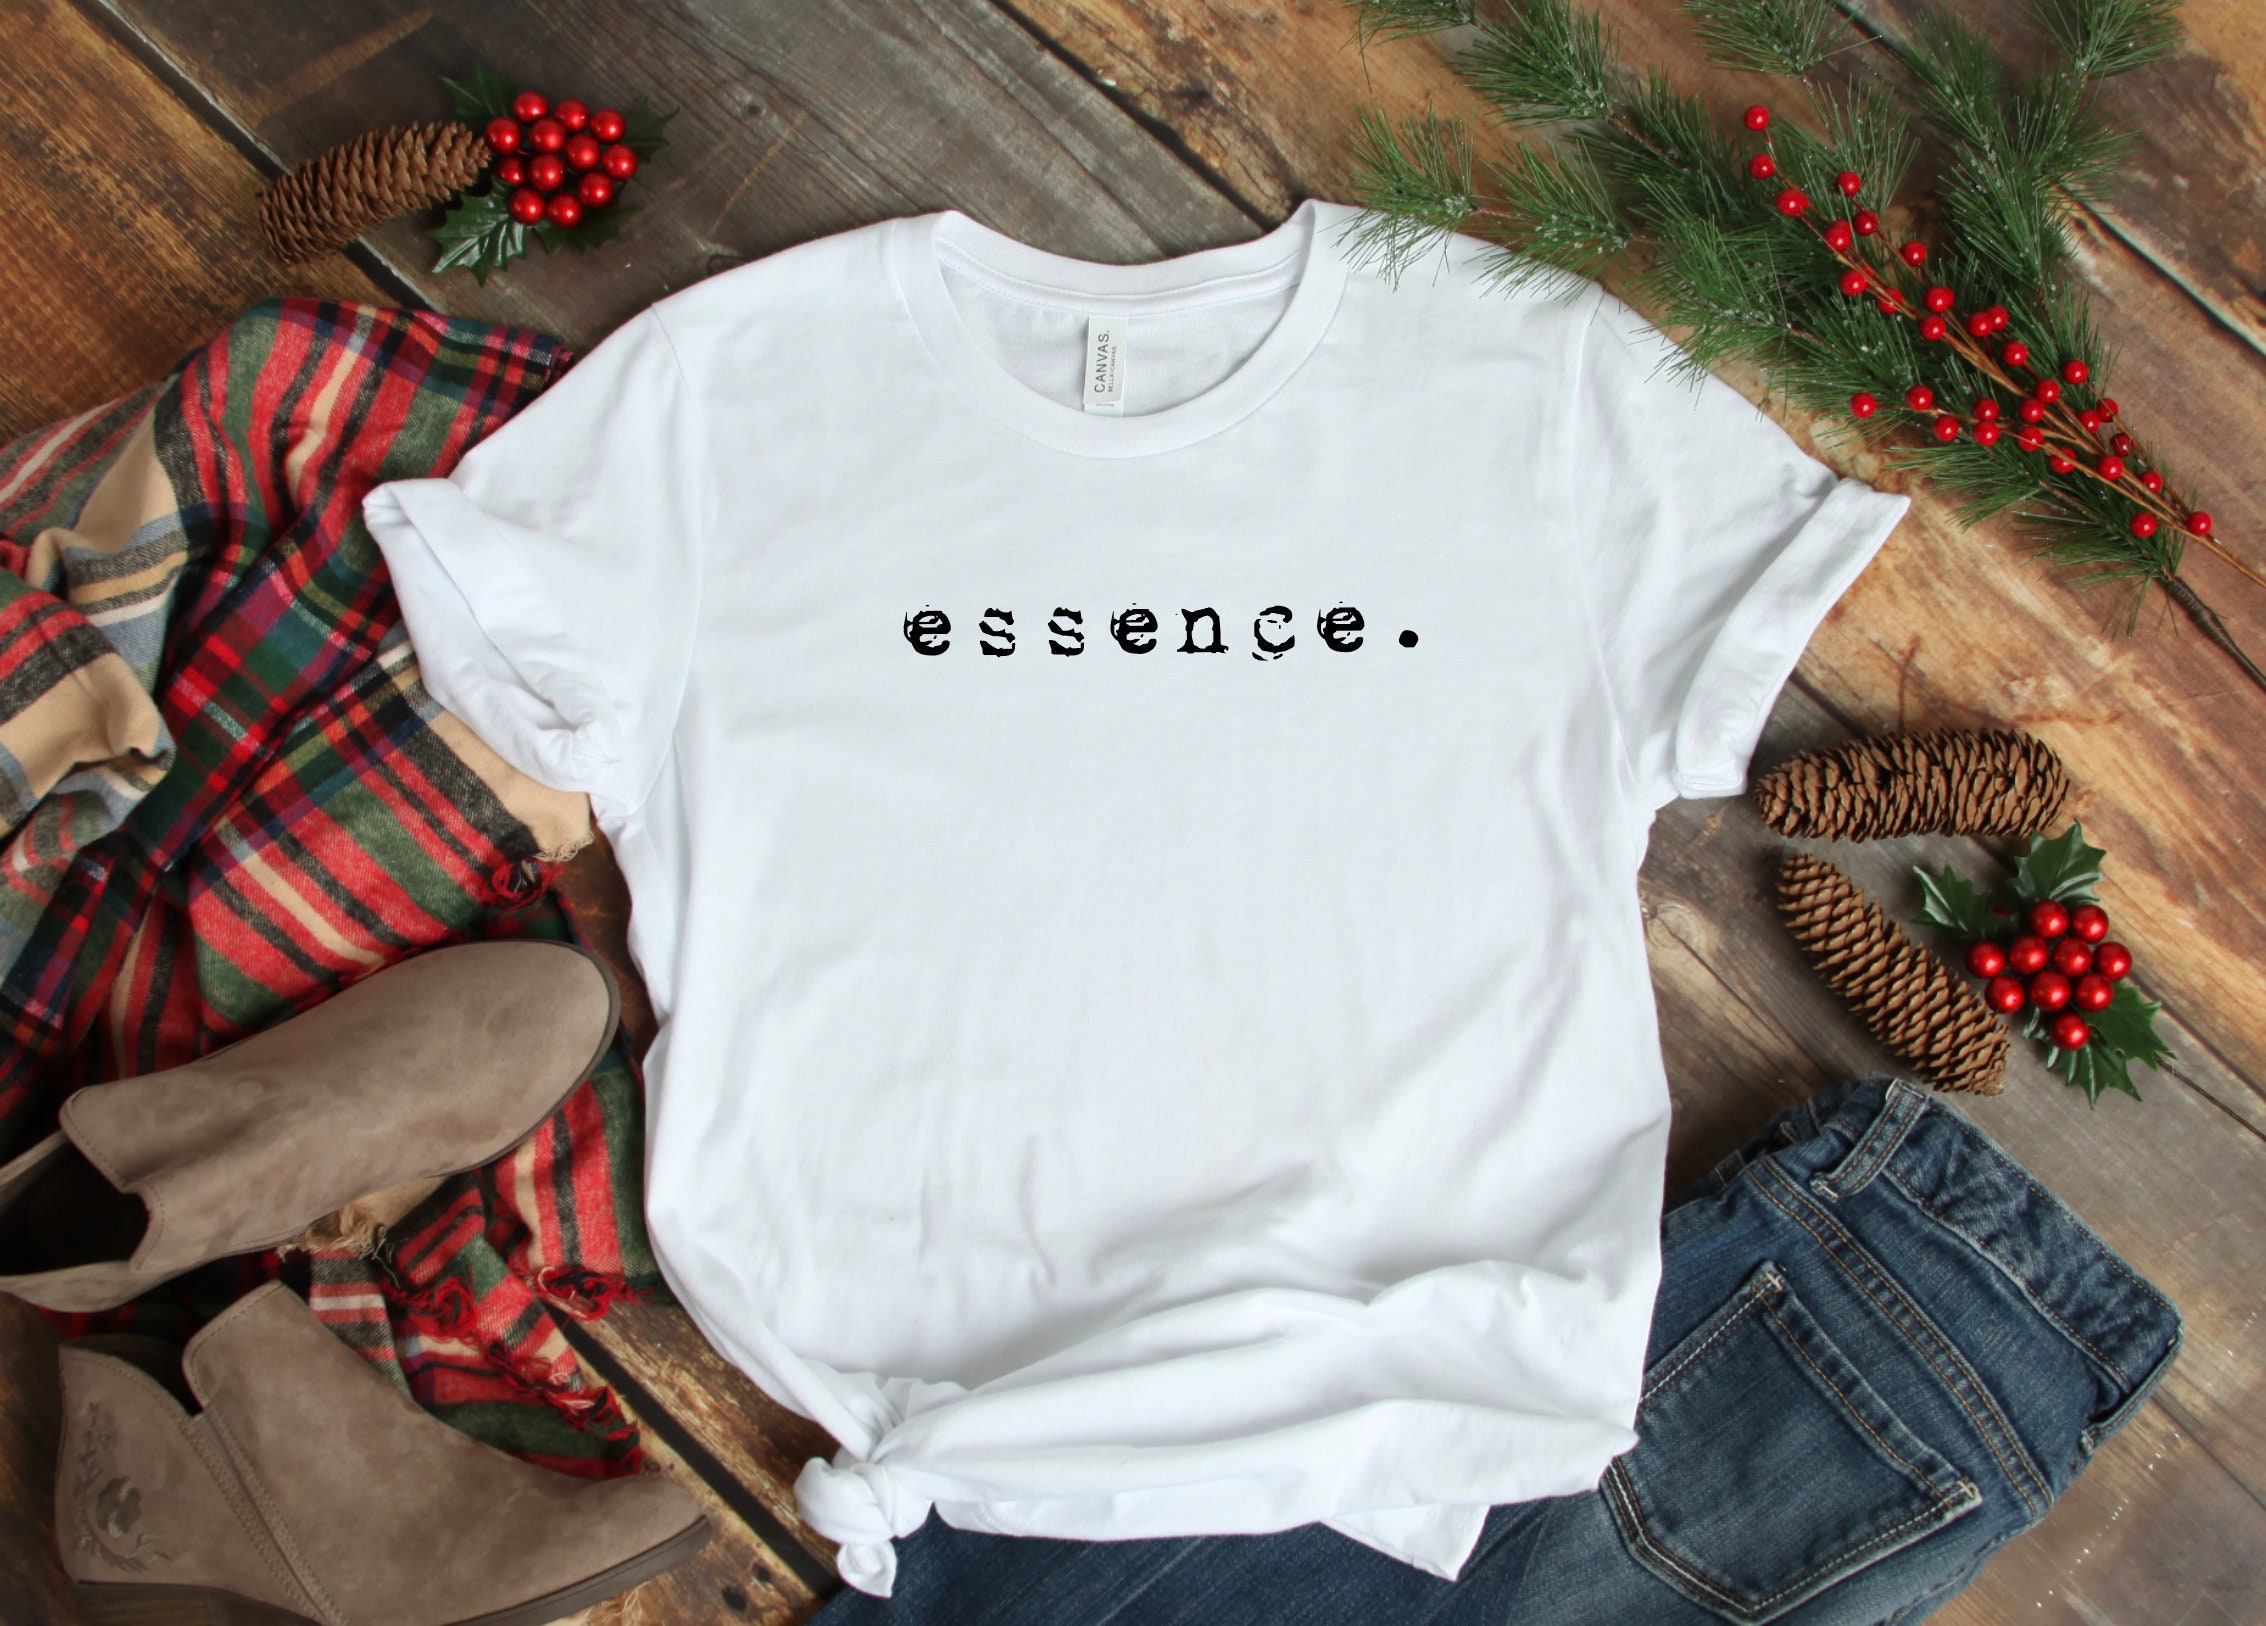 Essence Shirt / Essence T Shirt / Essence Shirts / Essence - Etsy